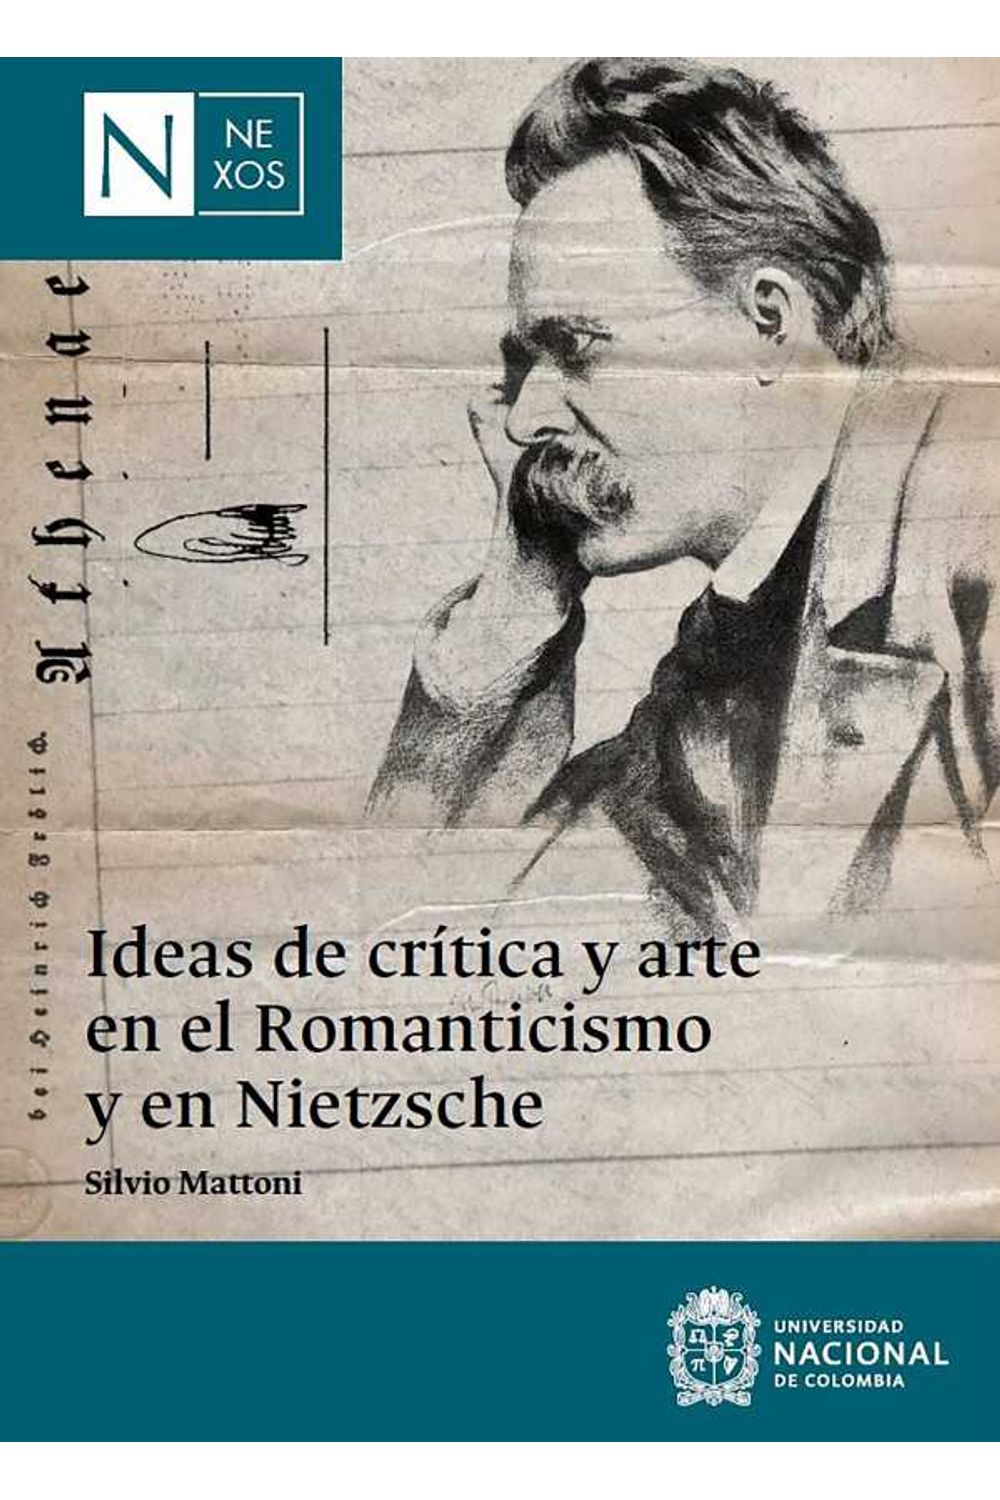 bw-ideas-de-criacutetica-y-arte-en-el-romanticismo-y-en-nietzsche-universidad-nacional-de-colombia-9789587942361